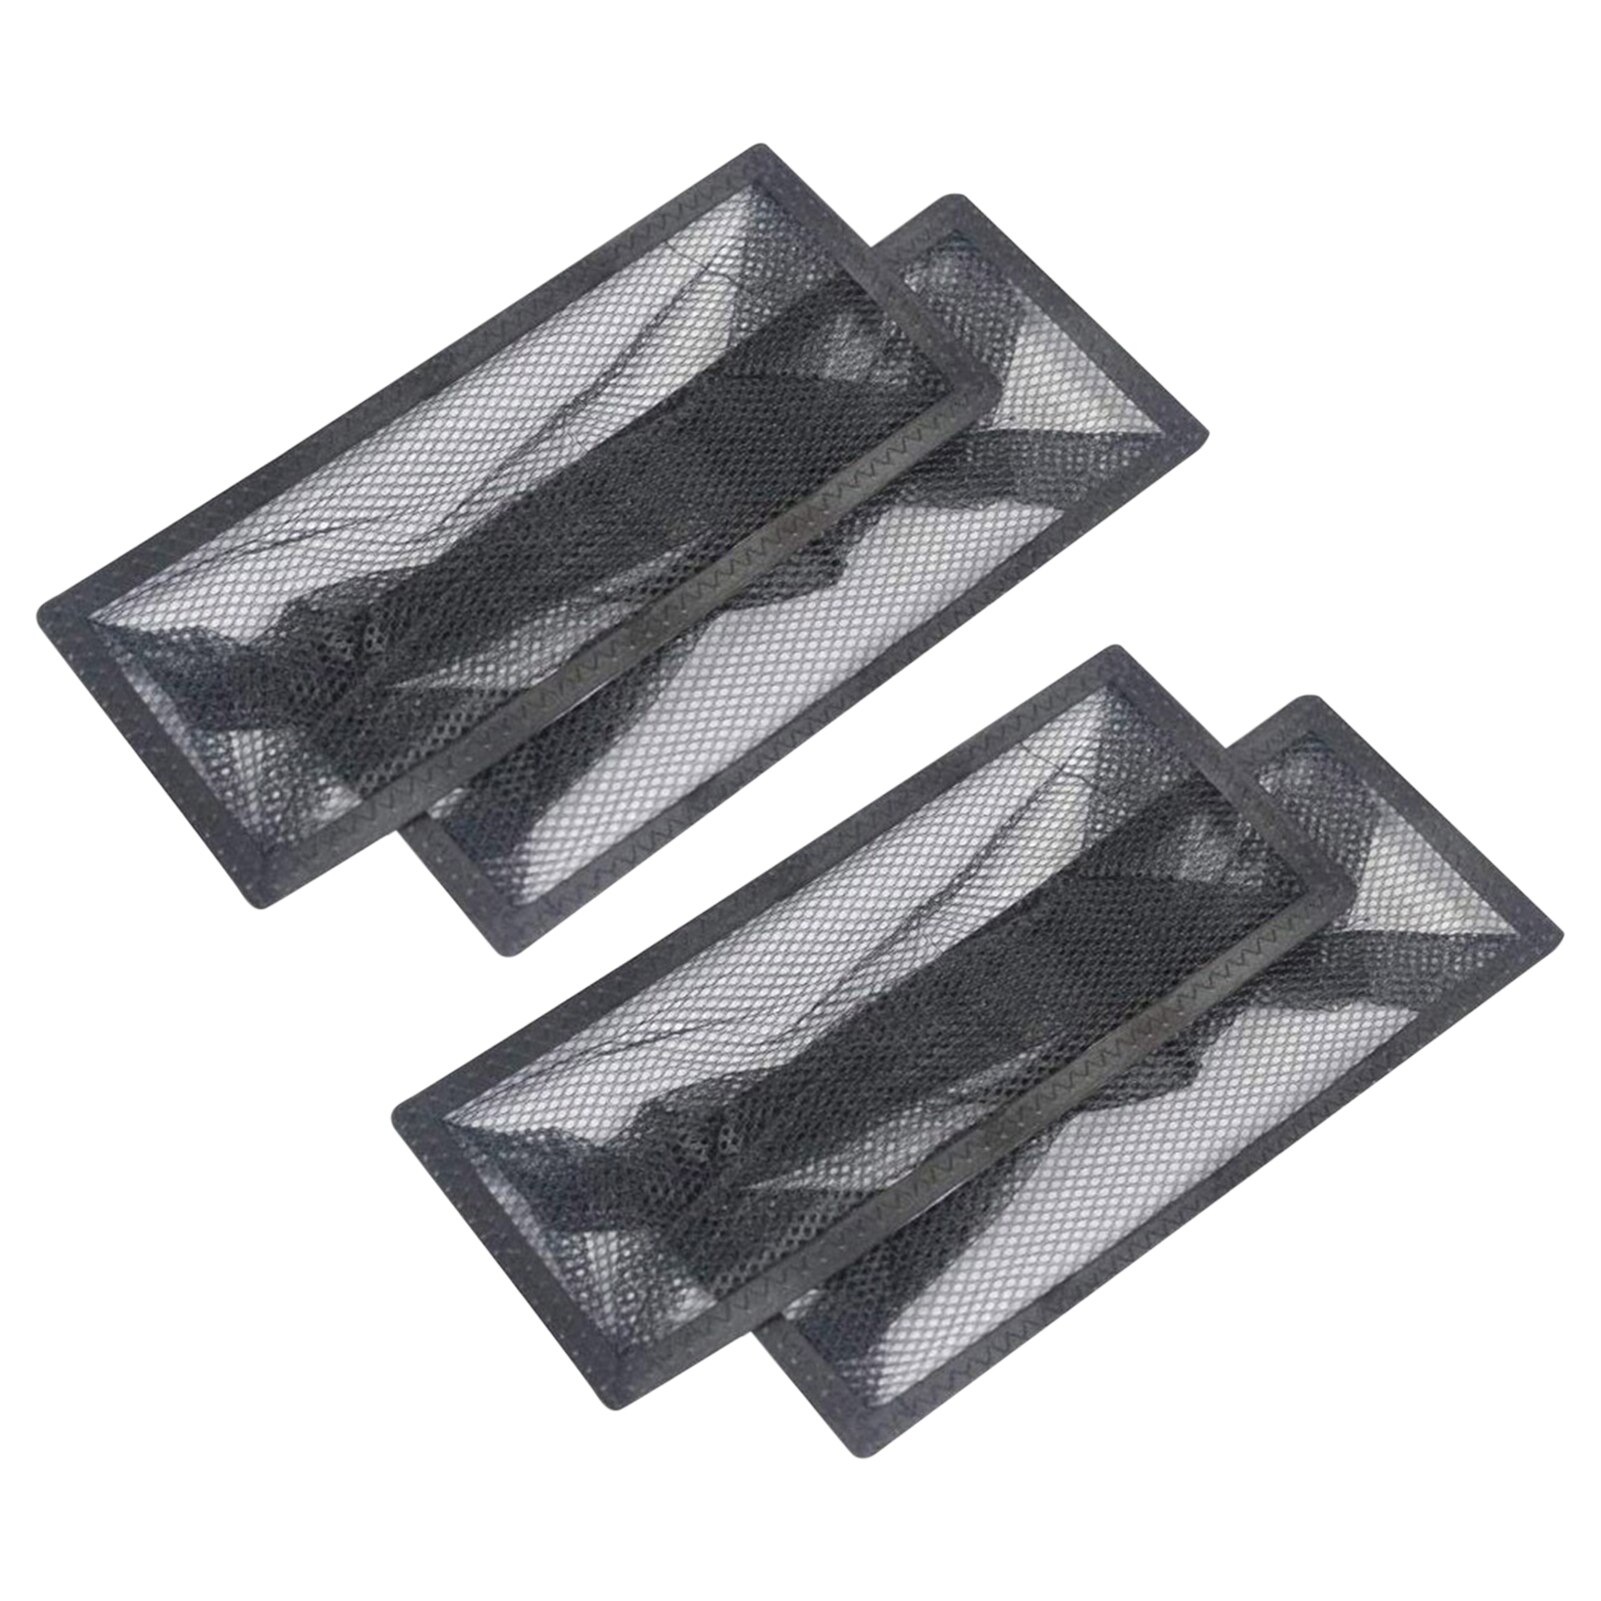 4 Stuks Duurzaam Voor Thuis Praktische Herbruikbare Floor Registreer Val Accessoires Mesh Black Vervanging Vangen Puin Air Vent Filter